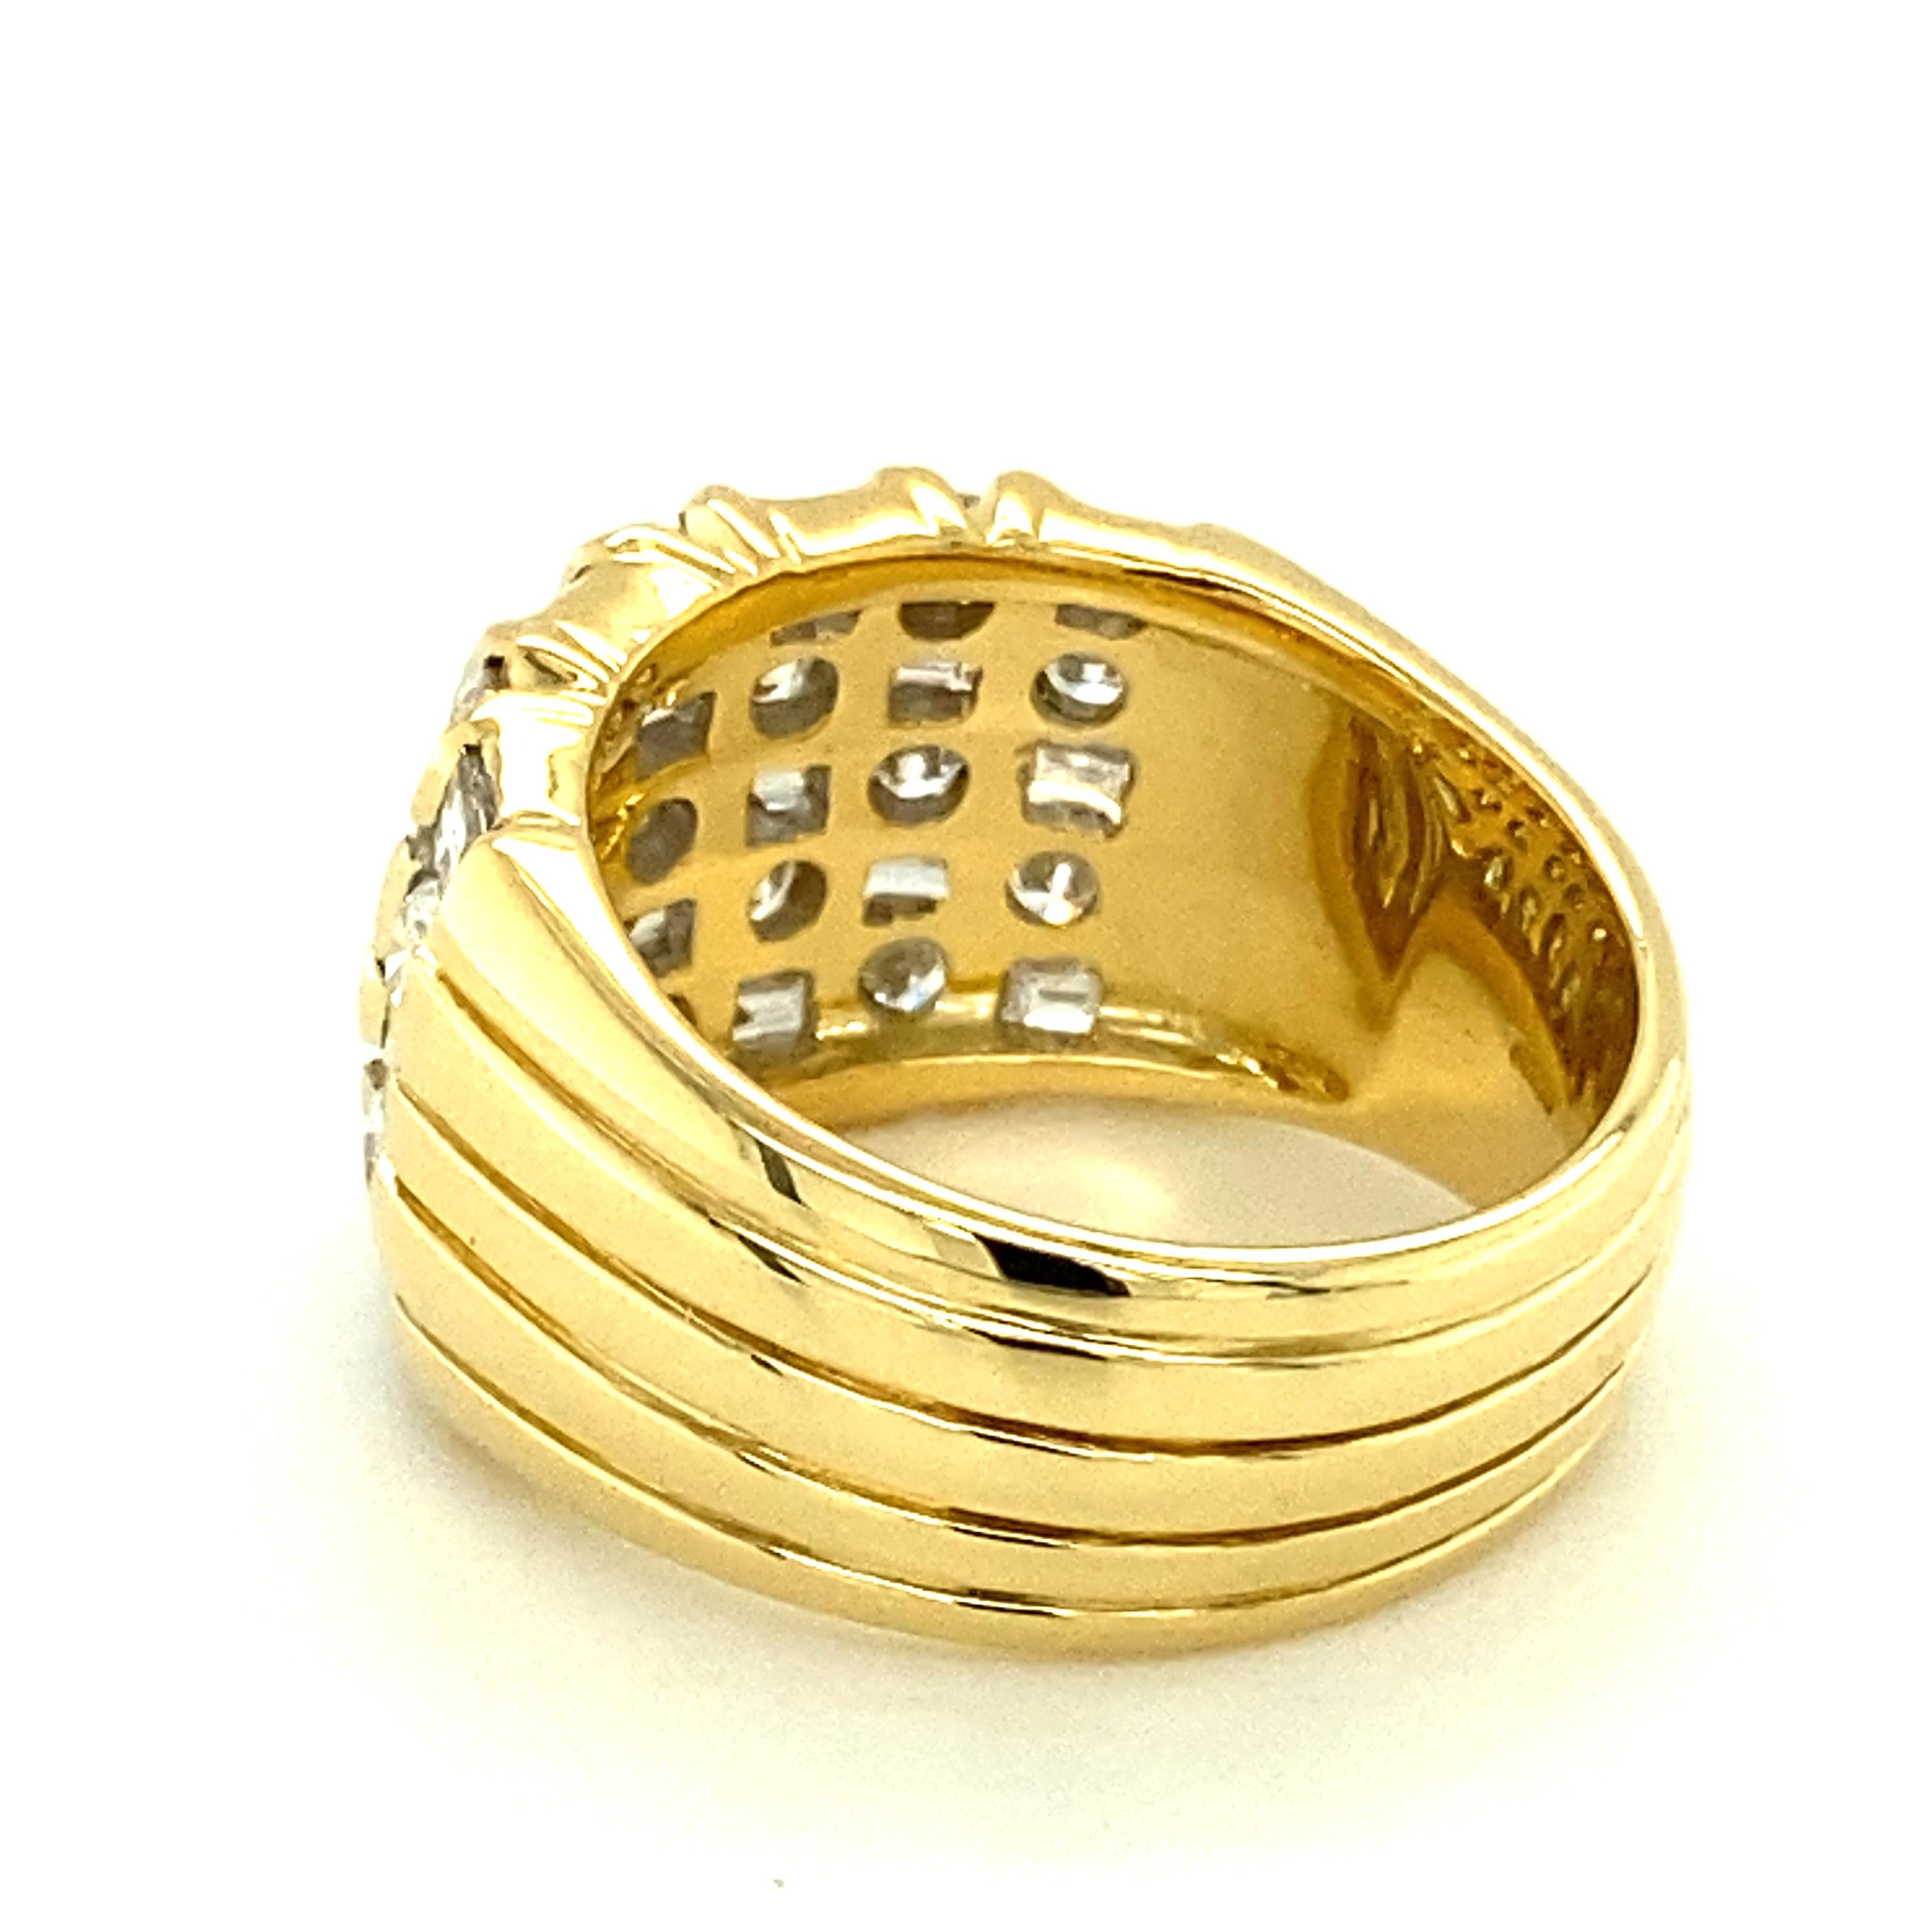 Sparkling Diamond Ring in 18 Karat Yellow Gold 6